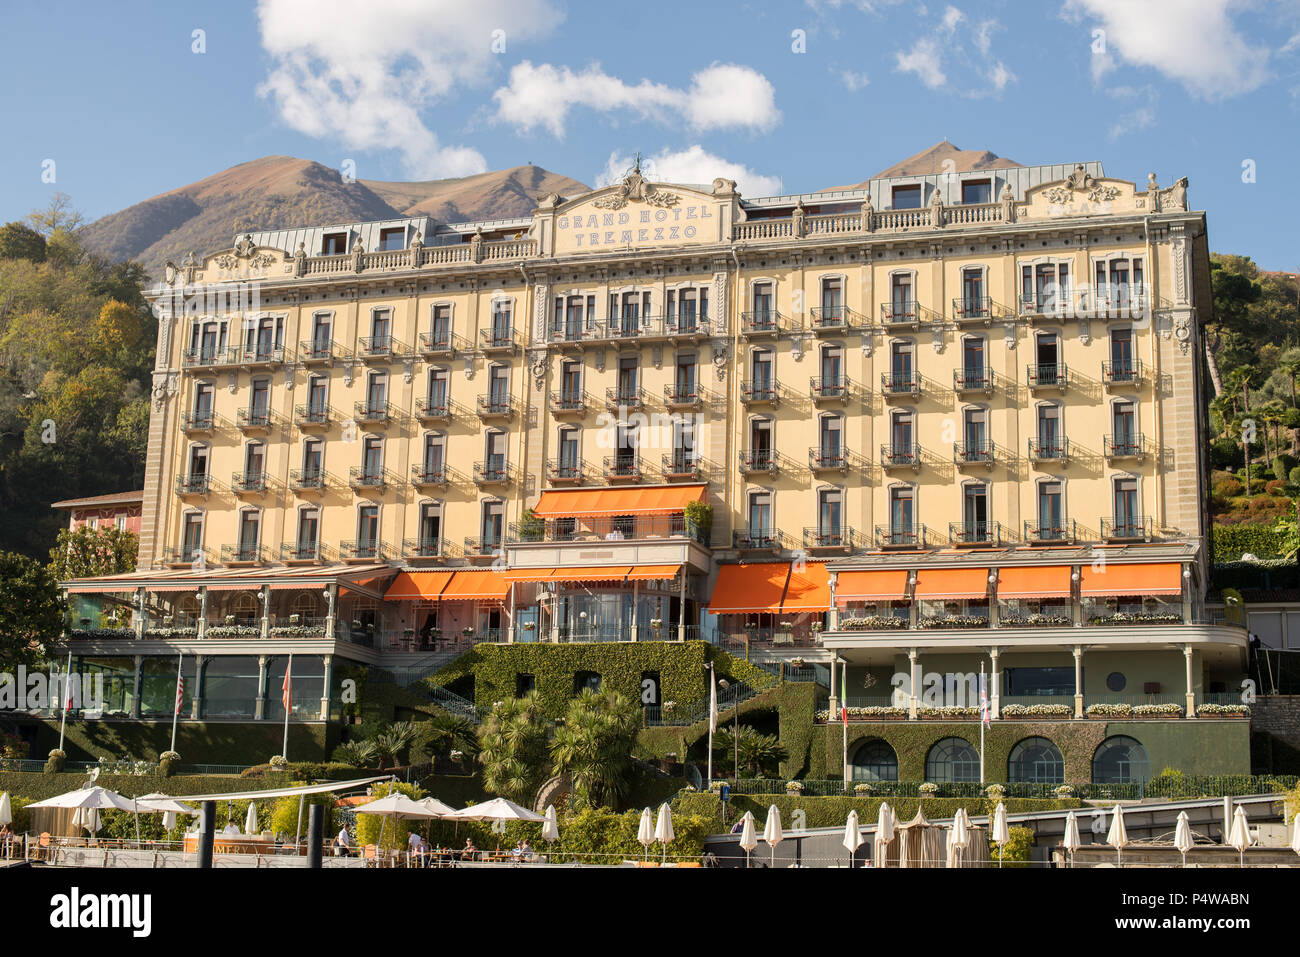 El Lago de Como, Italia - Octubre 27, 2017: Grand Hotel de Tremezzo, en el Lago de Como, Italia. Foto de stock